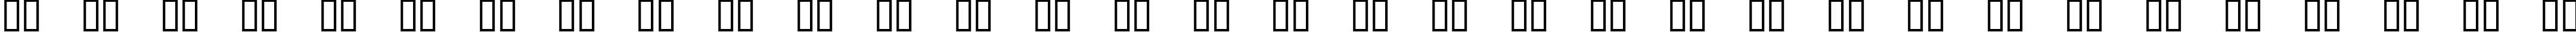 Пример написания русского алфавита шрифтом Brigida